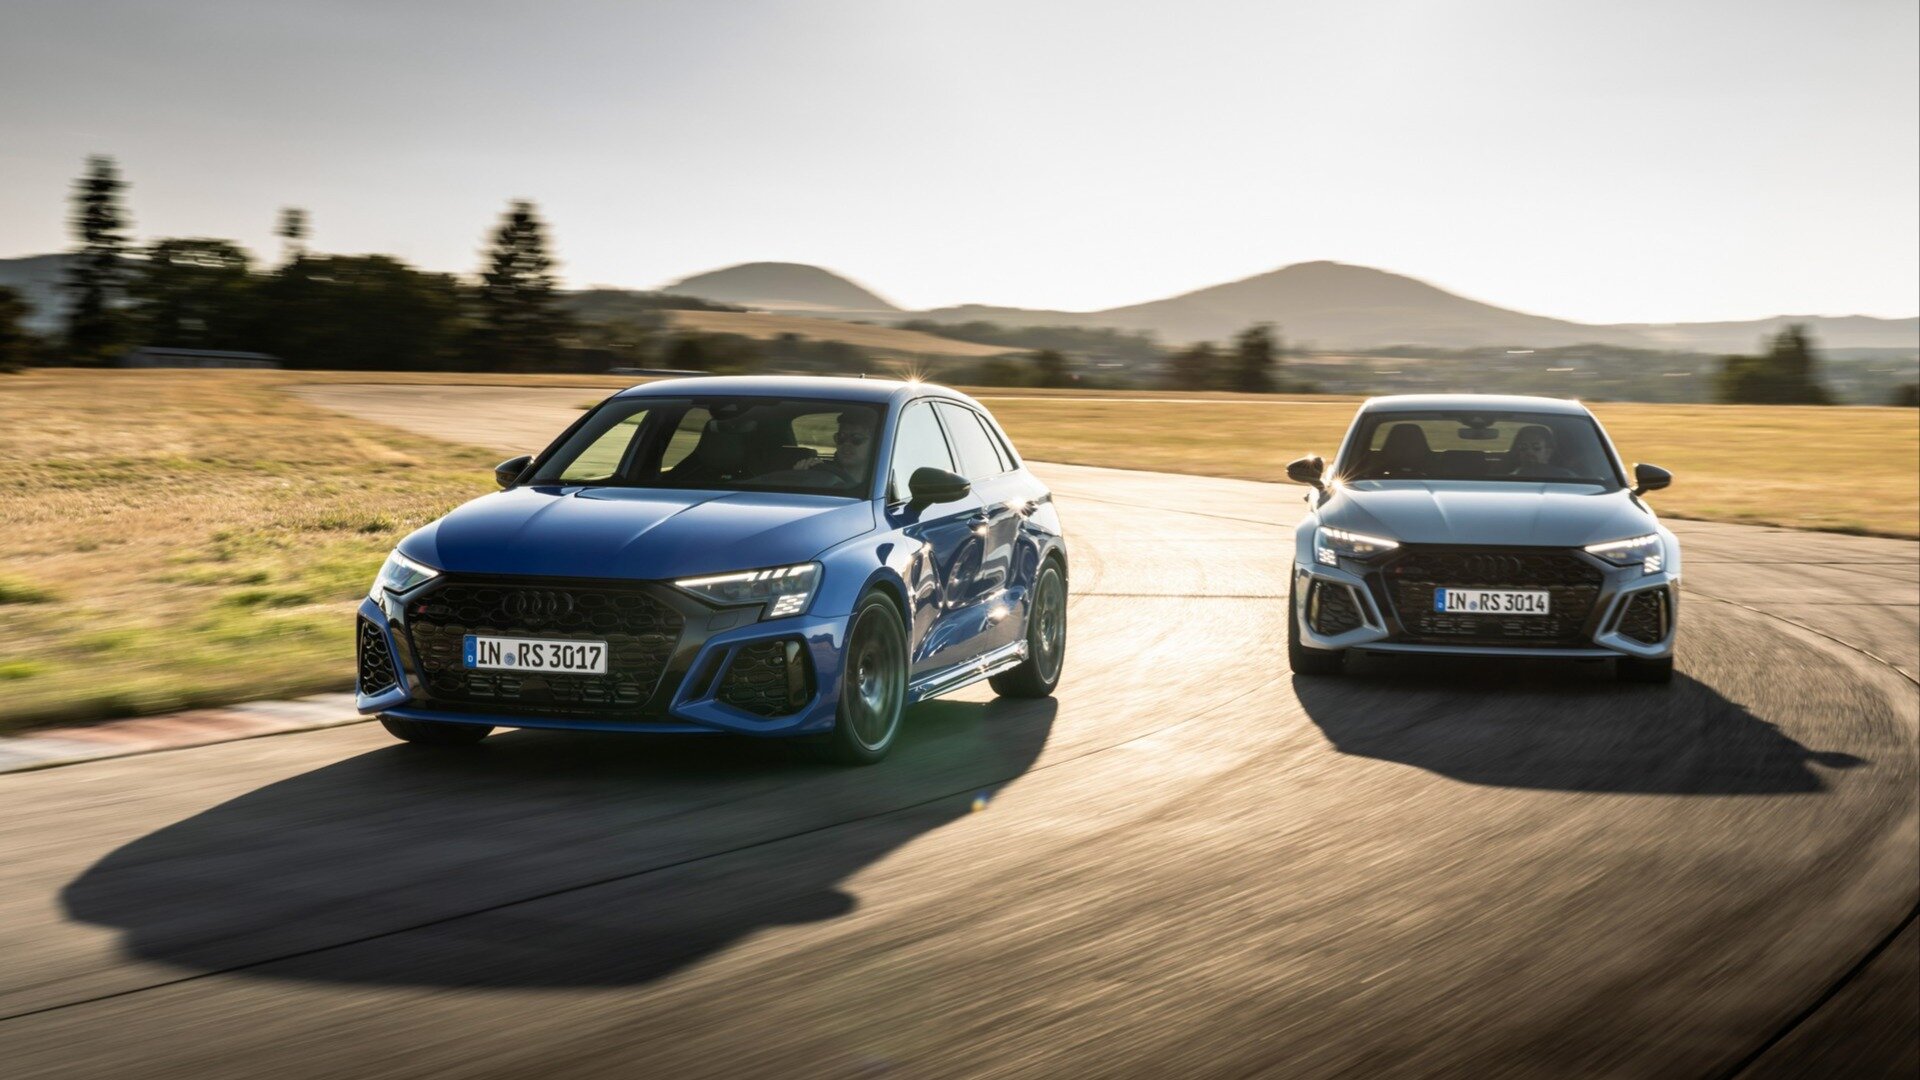 При створенні нових двигунів, компанія Audi буде зосереджуватися на оптимізації силових агрегатів, починаючи з їхньої конструкції. Нові двигуни отримають менші розміри, що дозволить встановити їх у більшість моделей автомобілів компанії.